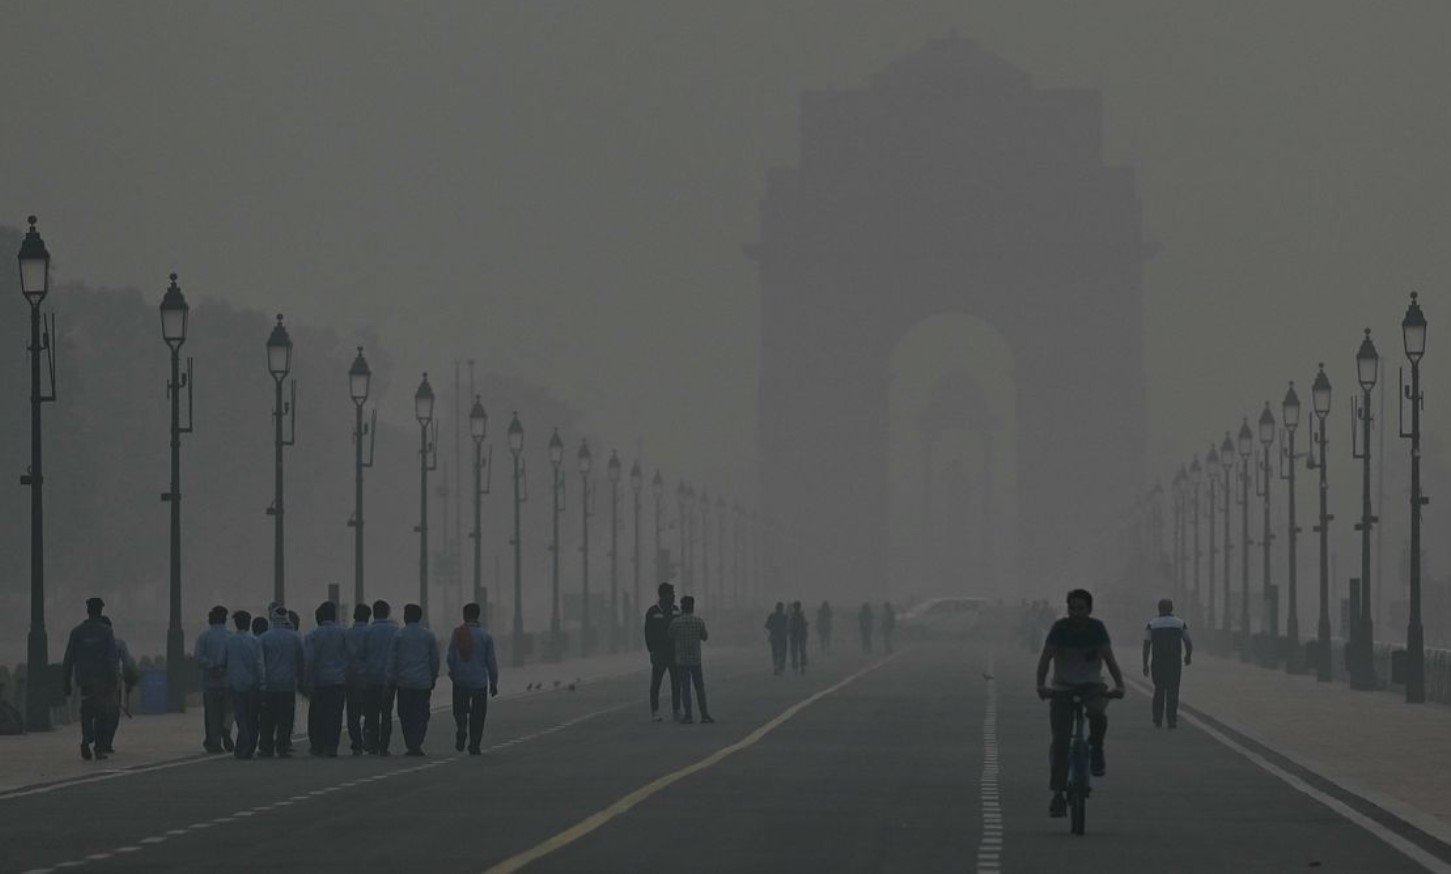 Ινδία: Ρεκόρ στα επίπεδα ατμοσφαιρικής ρύπανσης στο Νέο Δελχί - Κλειστά τα δημοτικά σχολεία